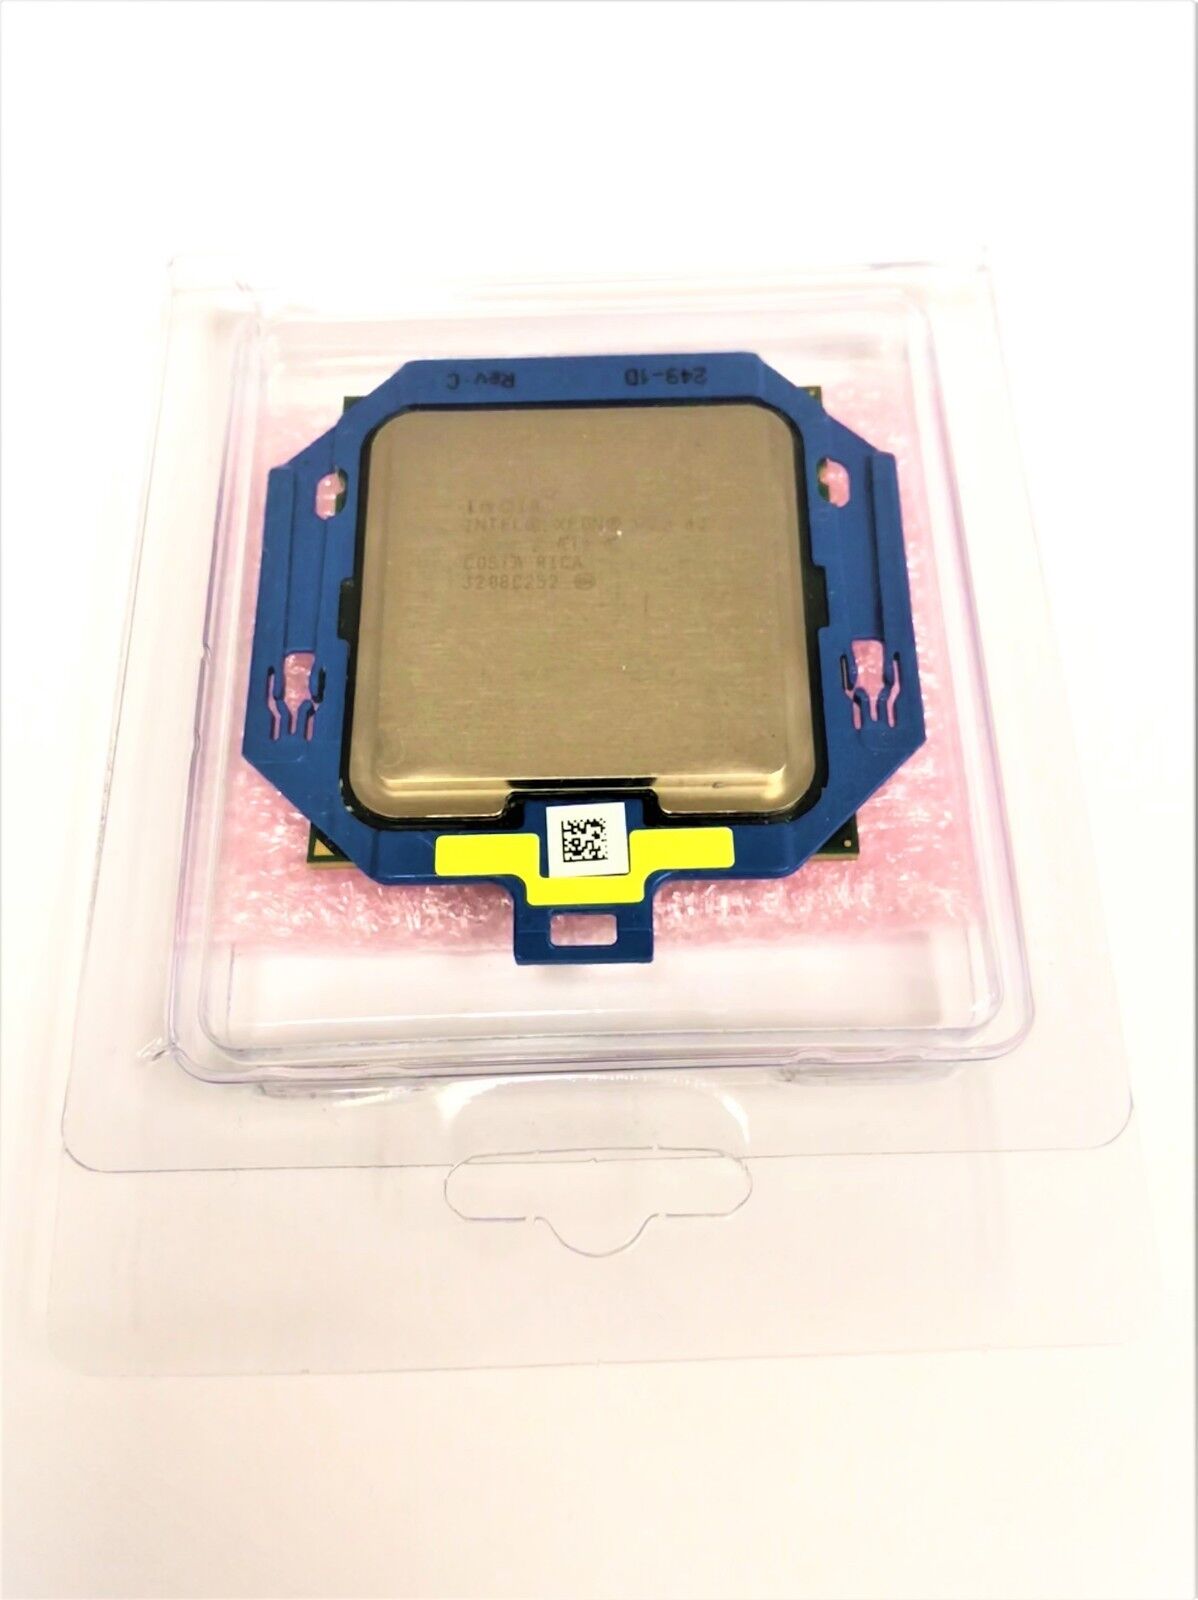 Intel SR1AX Xeon E5-2609 v2 2.5GHz 10MB 6.4GT/s Server Processor